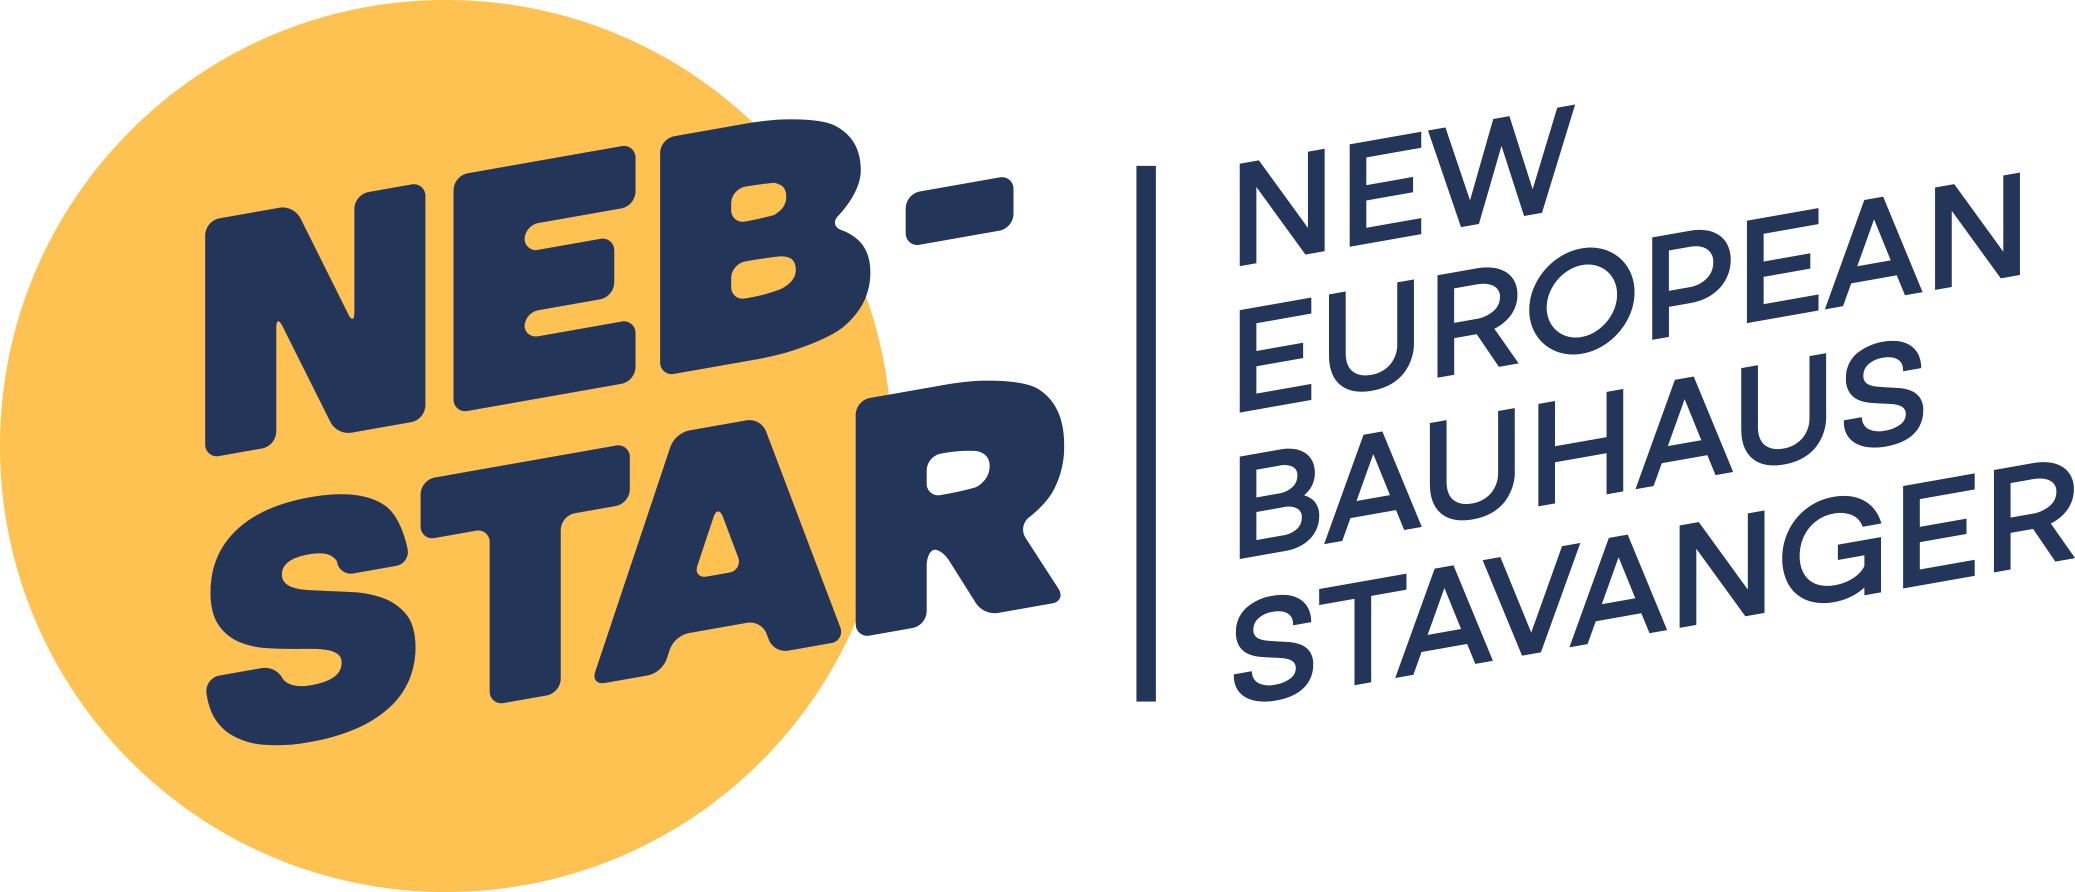 NEB-STAR logo